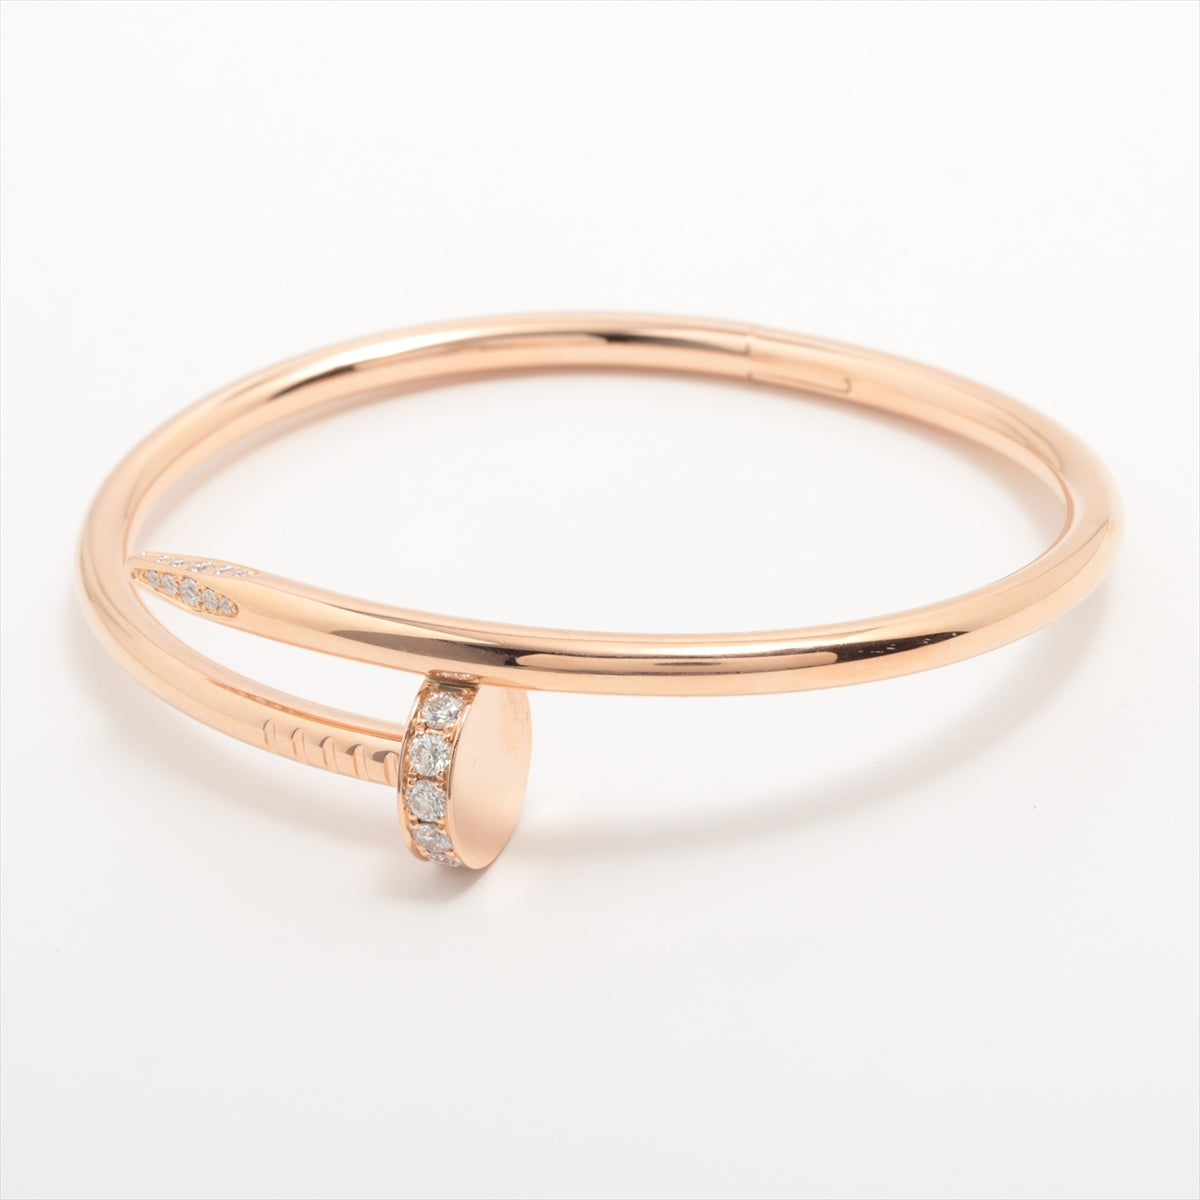 Cartier Juste un Clou Diamonds Bracelet - A2623378 - 750(YG) 28.8g - Size 16 - Full Set